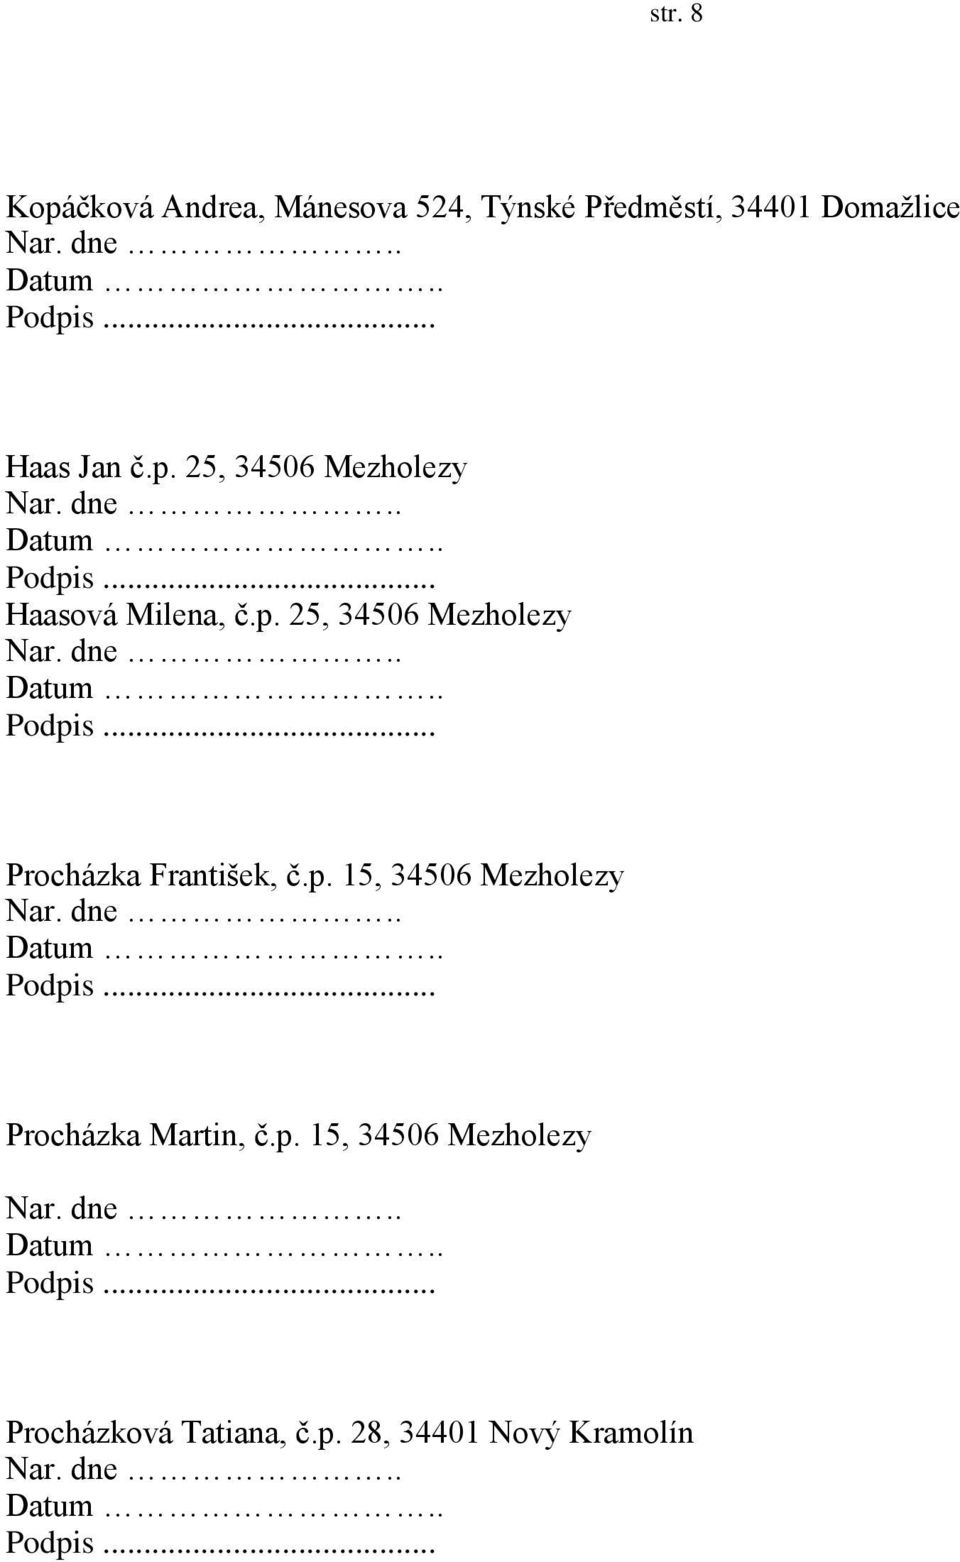 p. 15, 34506 Mezholezy Procházka Martin, č.p. 15, 34506 Mezholezy Procházková Tatiana, č.